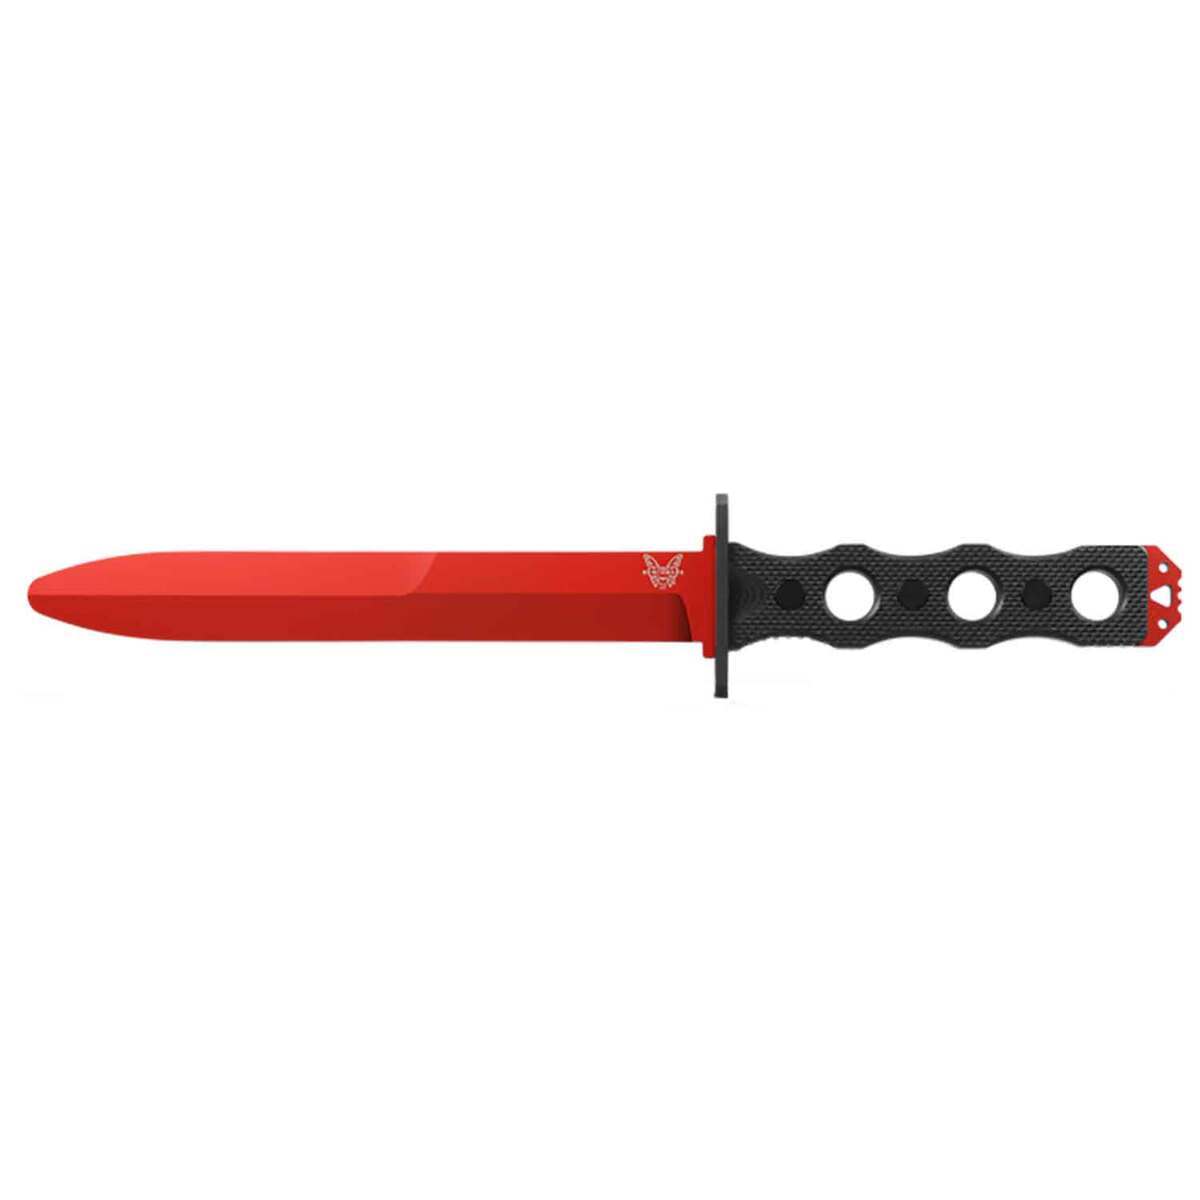 Pioneer Woman Knife Set JUST $29.97